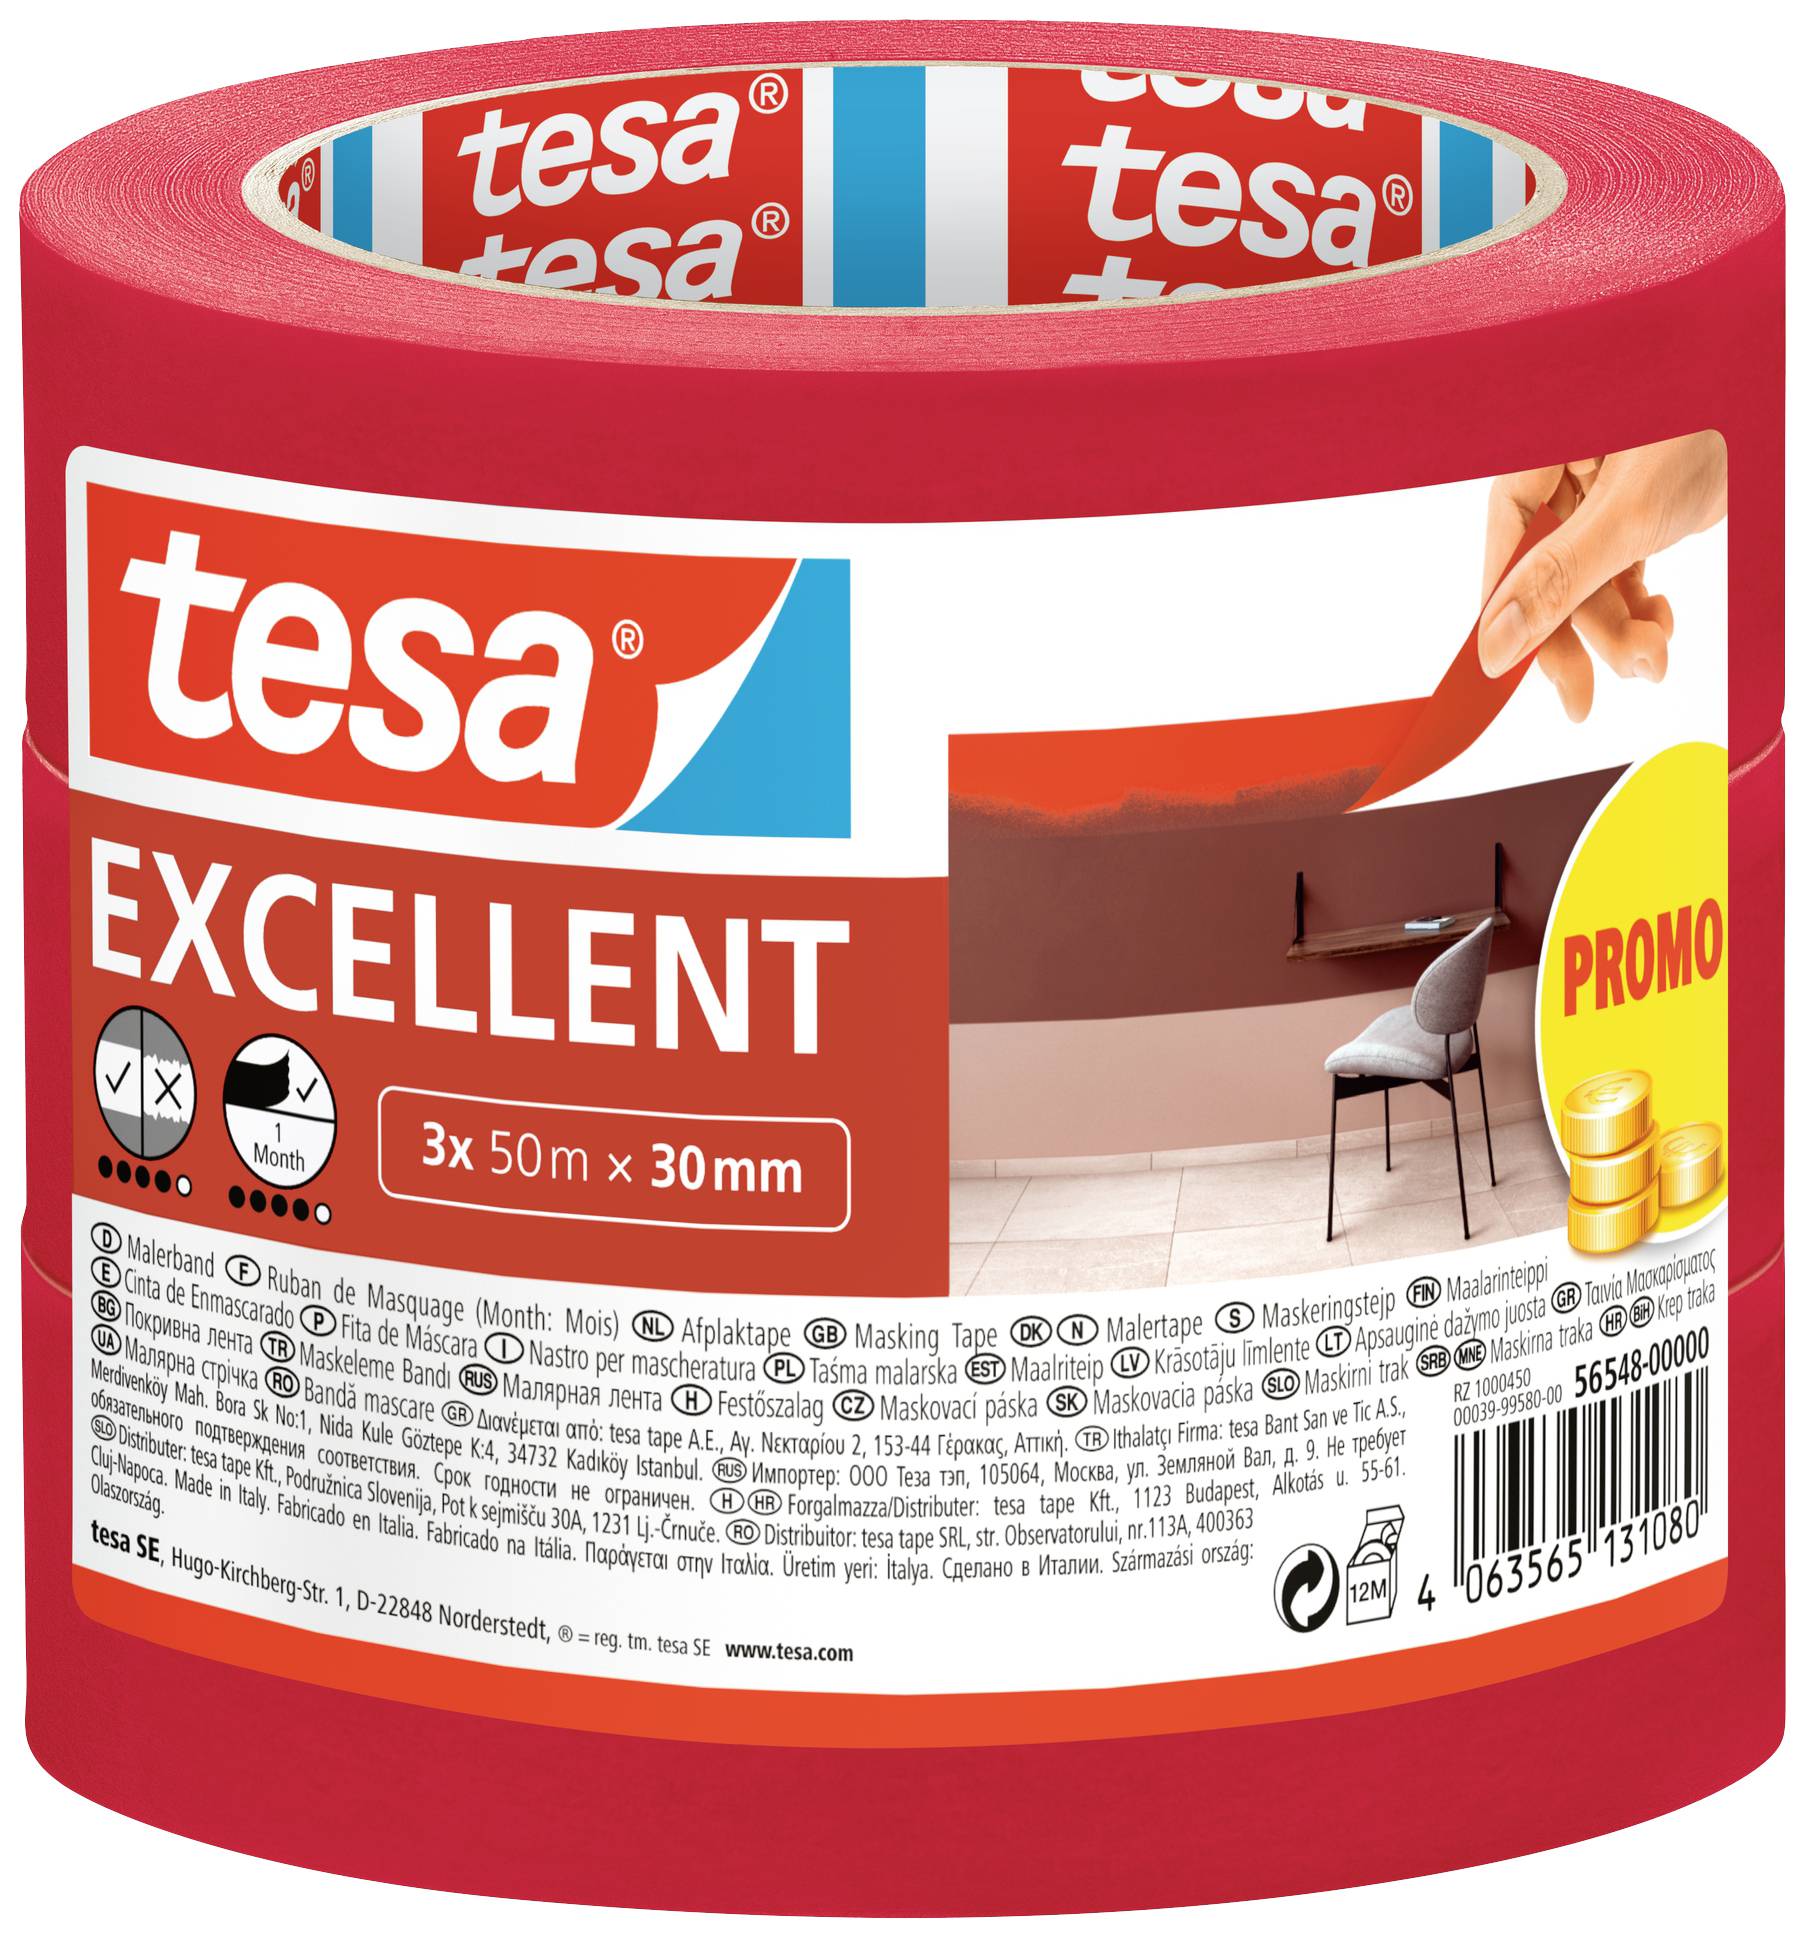 TESA EXCELLENT 56548-00000-00 Kreppband Rot (L x B) 50 m x 30 mm 3 St.